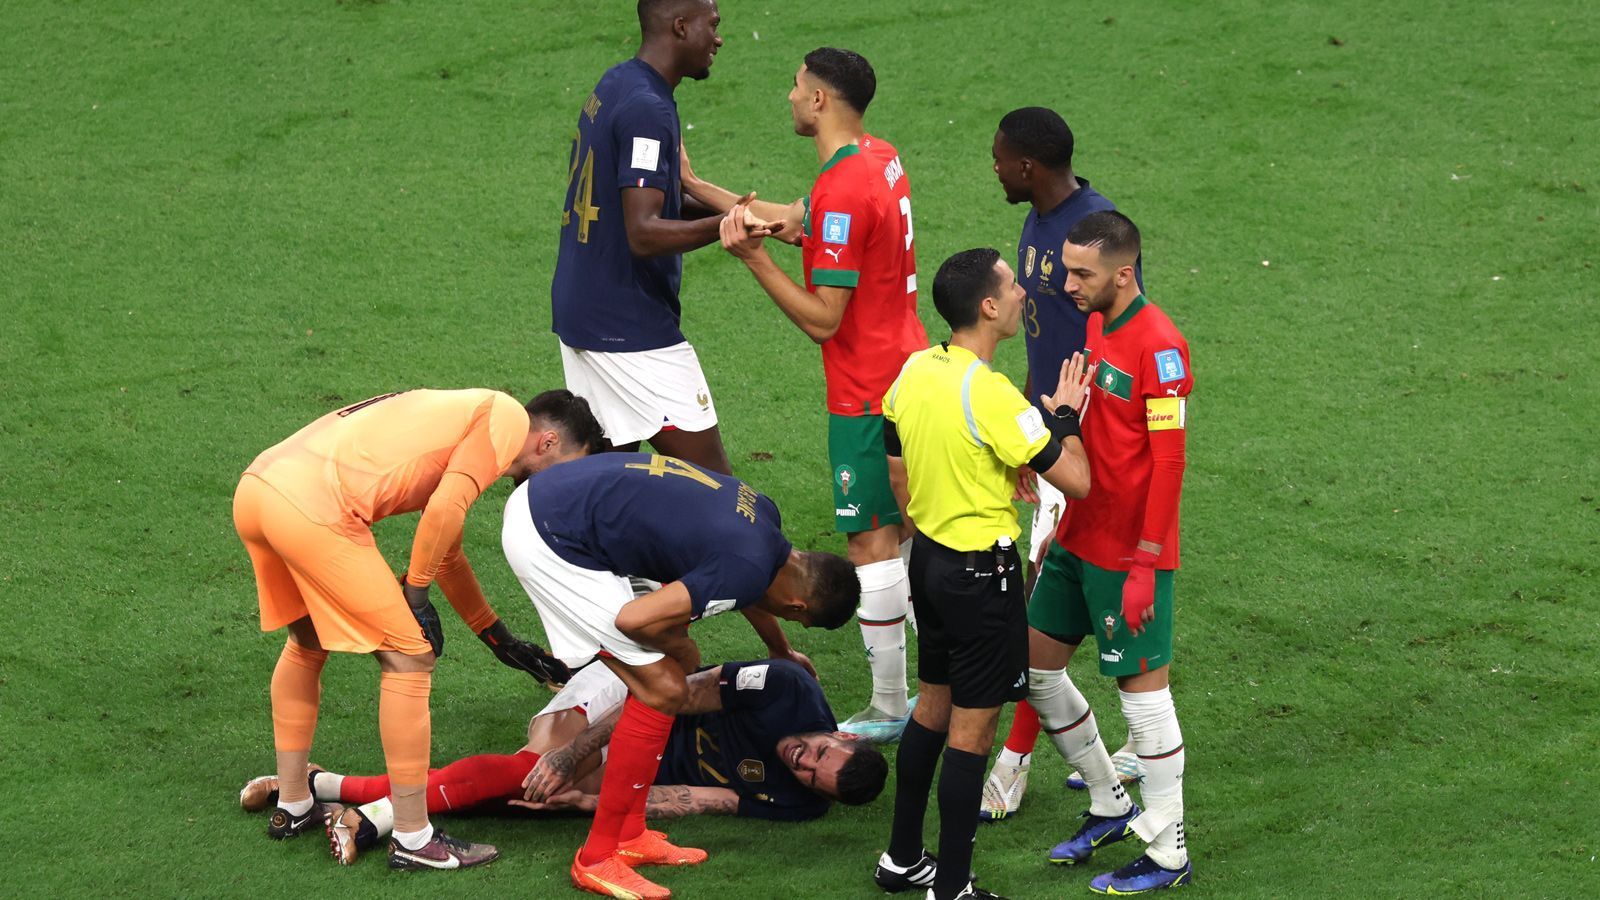 
                <strong>Bela Rethys beste Sprüche</strong><br>
                "Ich hoffe, dass das beim nächsten Turnier abgeschafft wird, dass der Schiedsrichter allen erklären muss, was man bei einem Eckball beachten soll. Das ist wie auf der Baumschule" - Rethy im WM-Halbfinale Frankreich gegen Marokko.
              